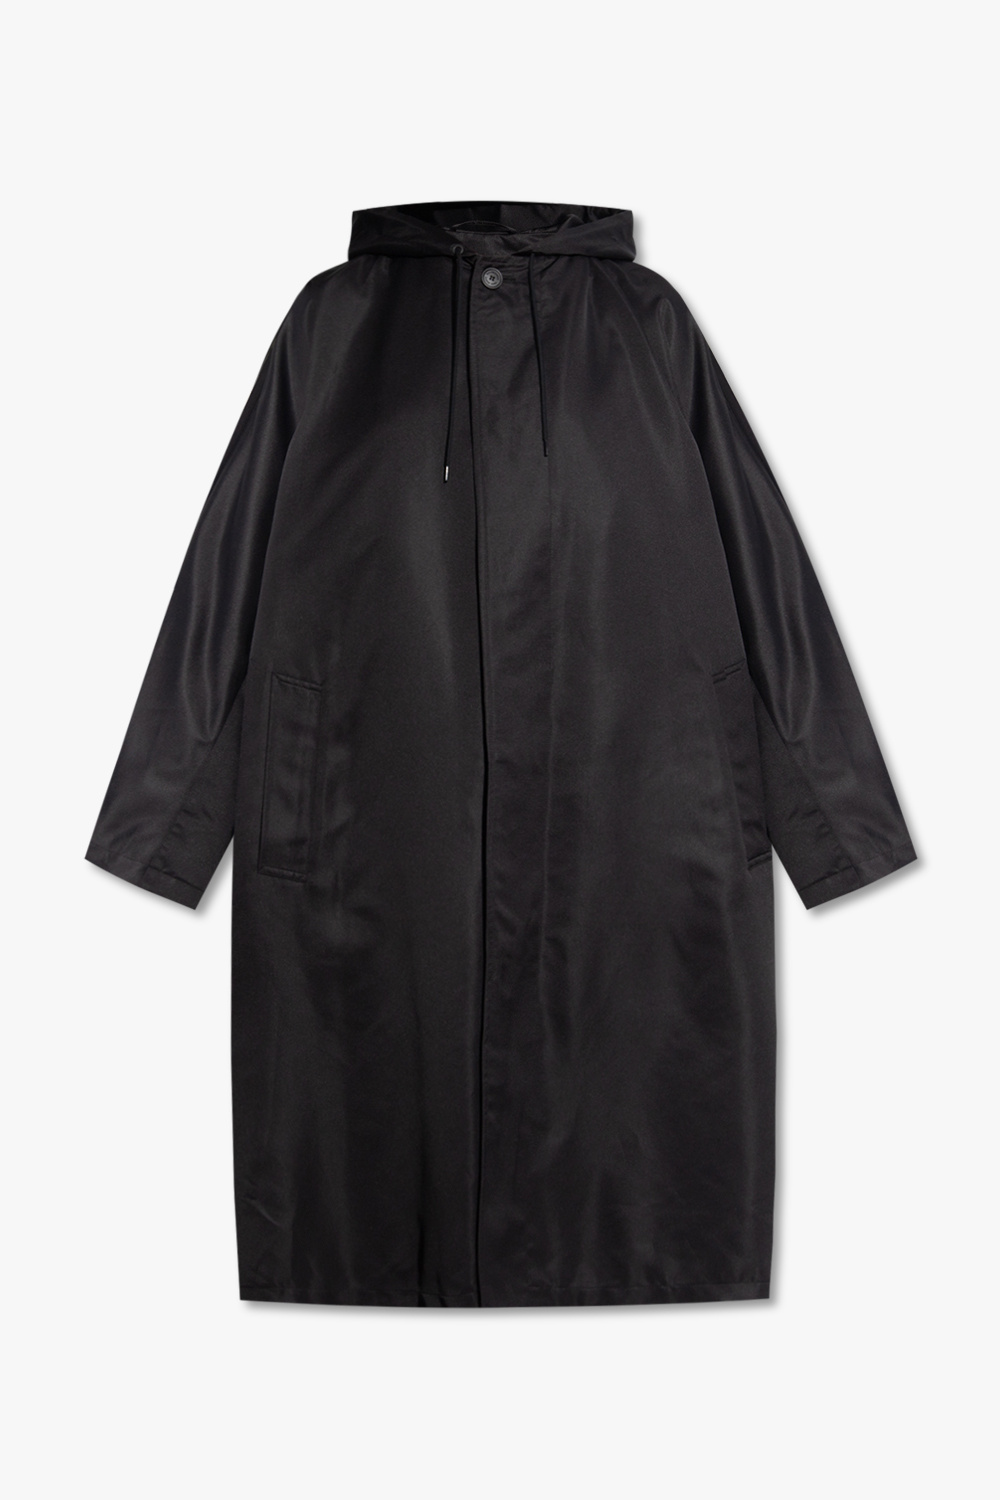 Balenciaga Hooded coat